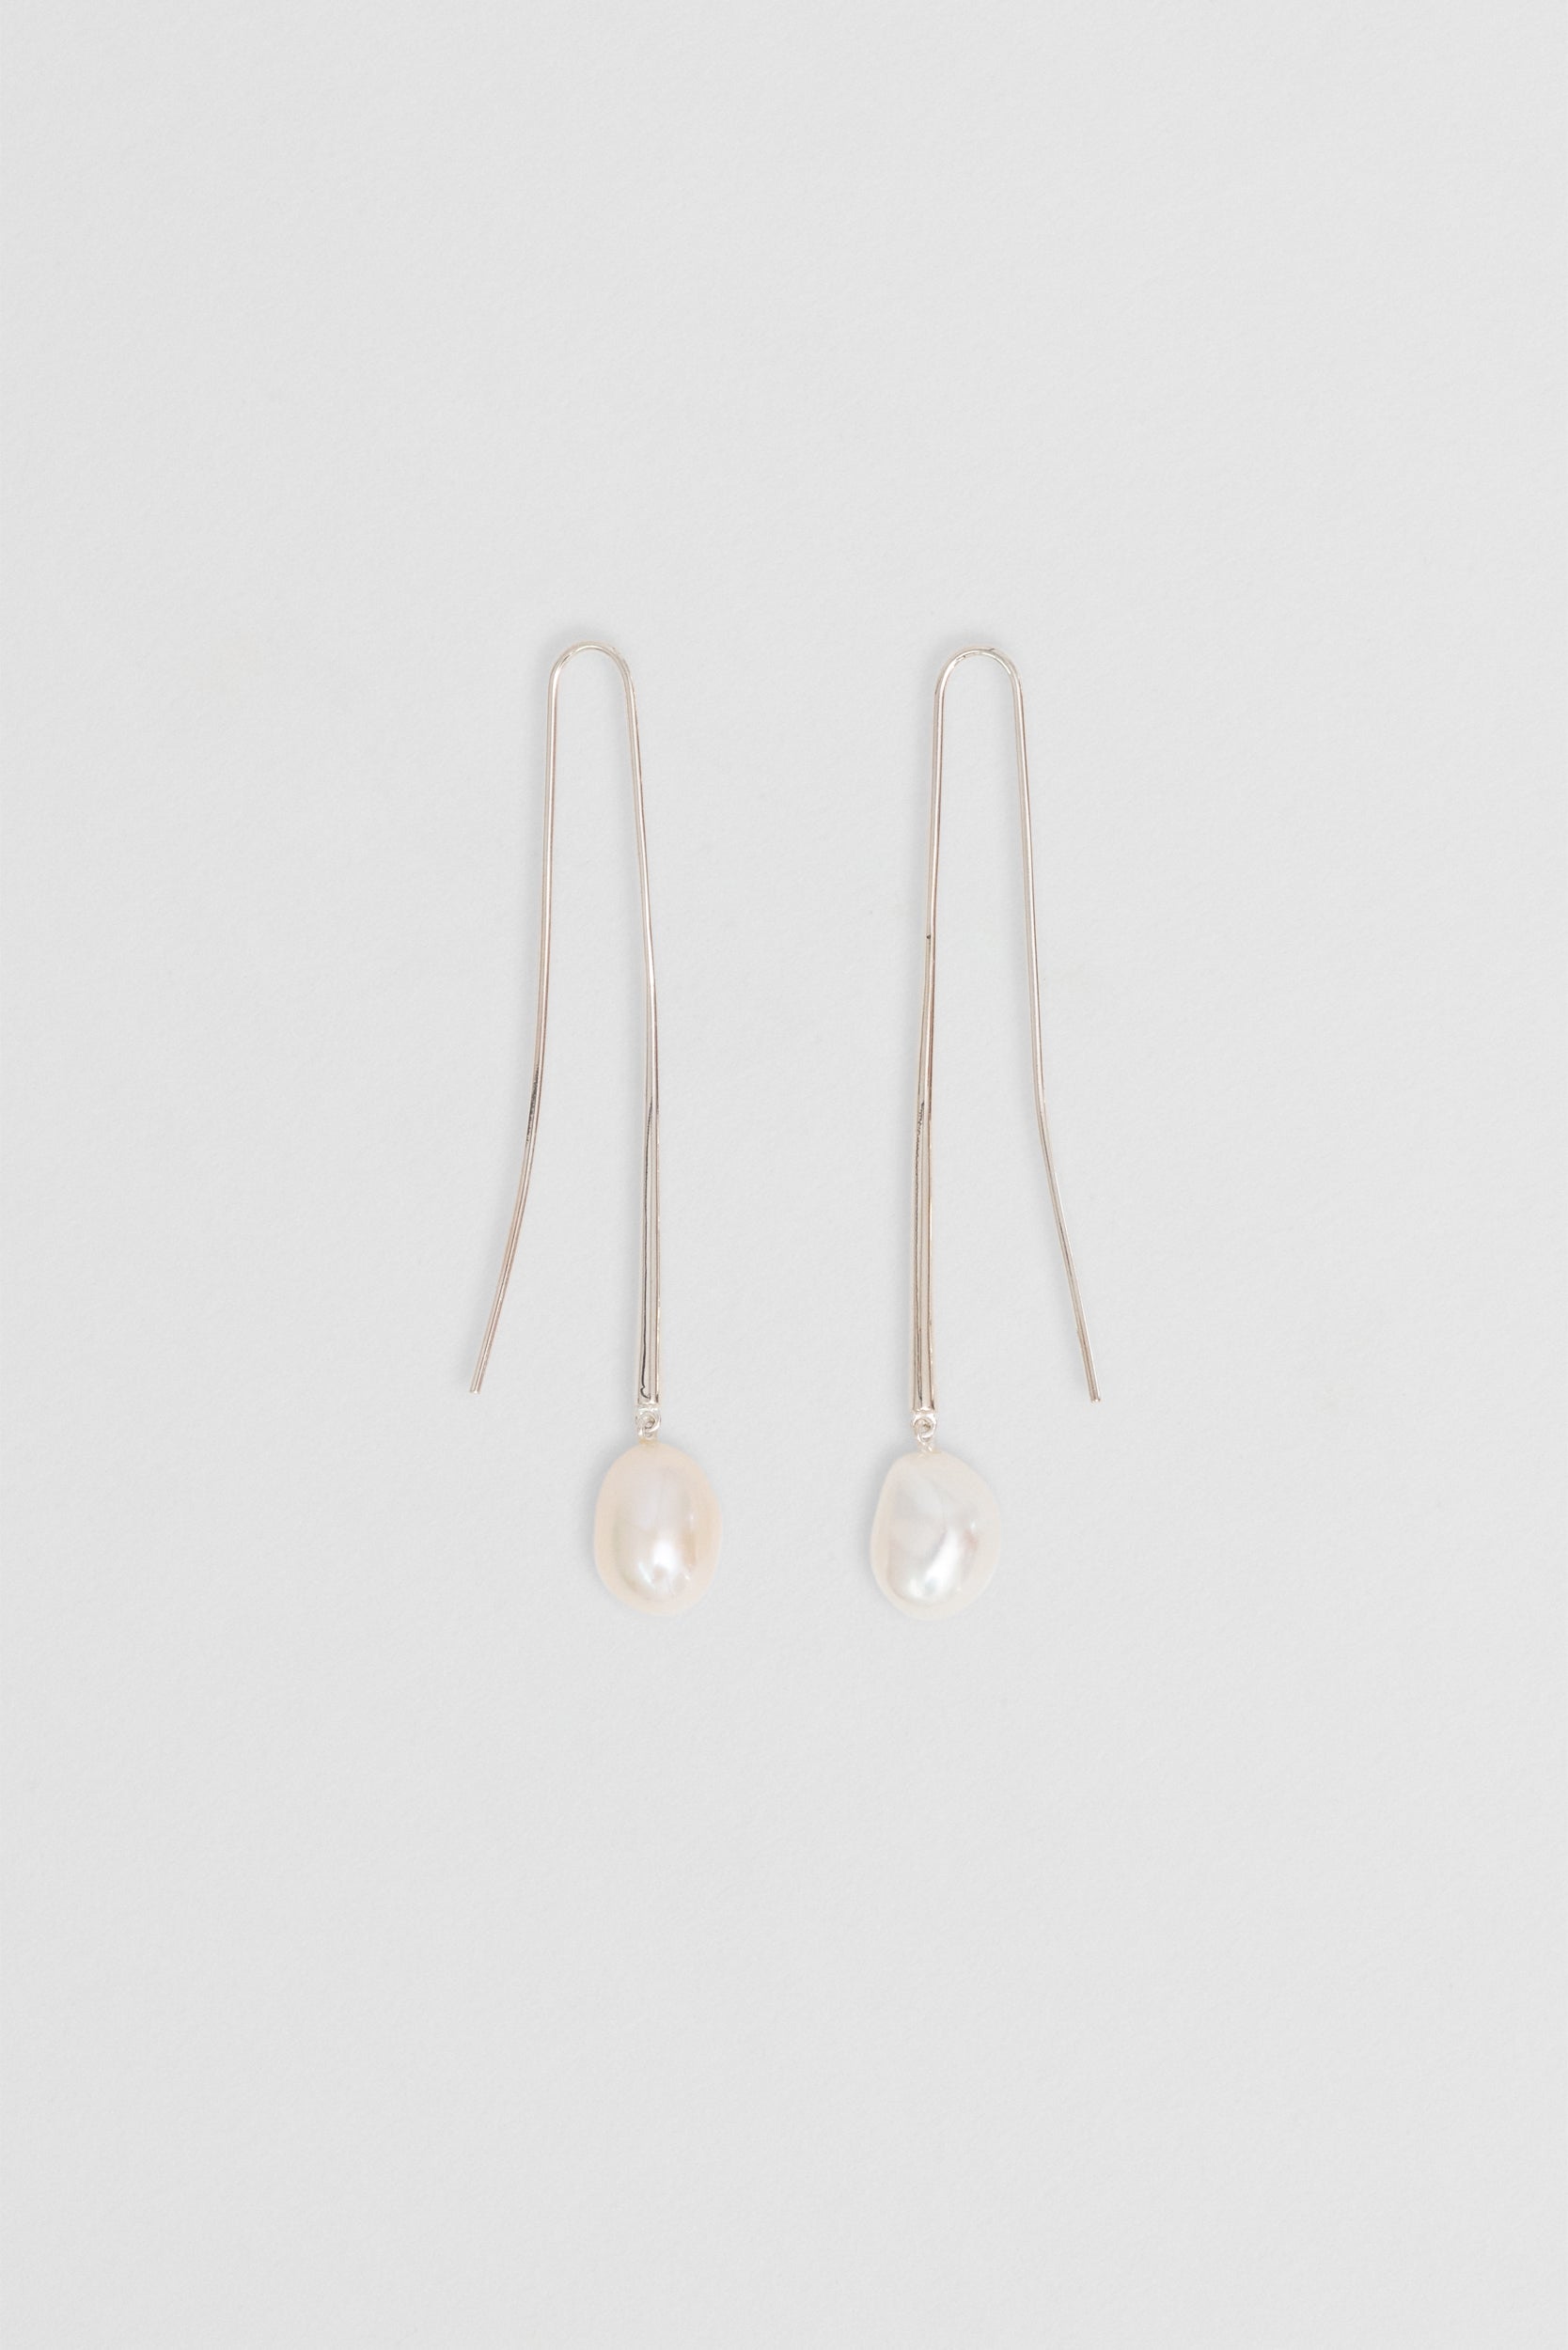 Cusp Pearl Earrings - Silver